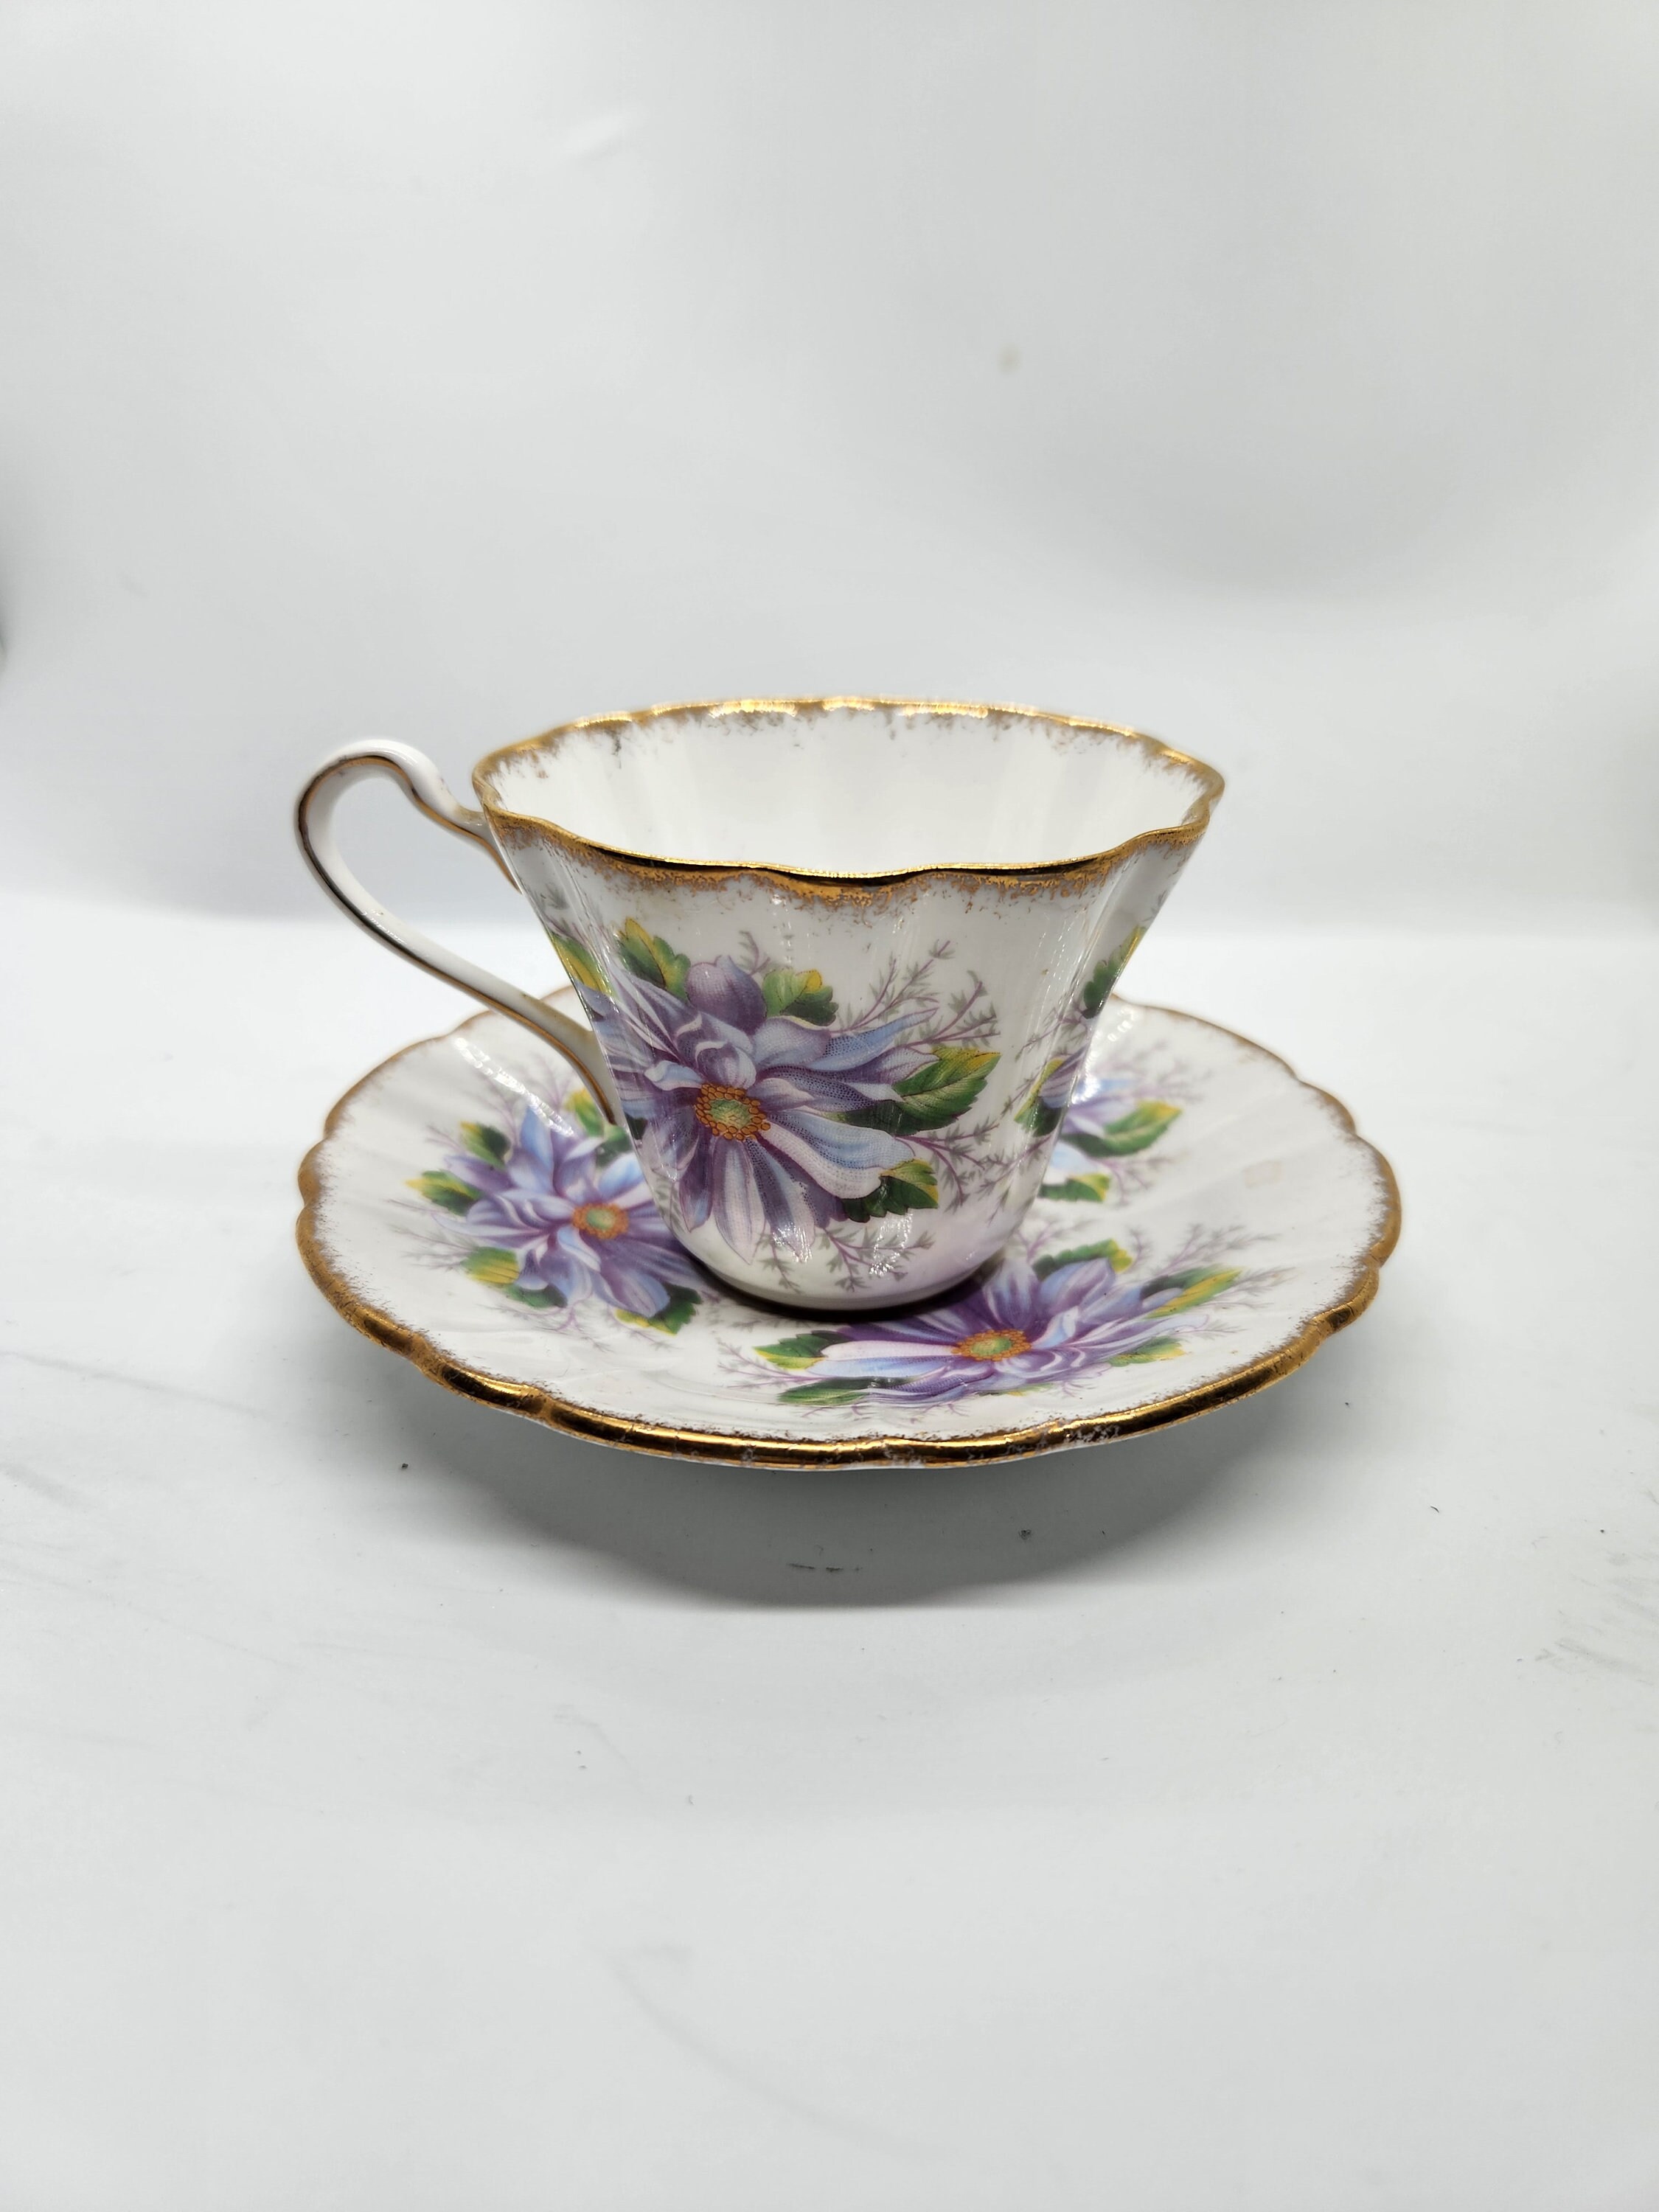 Dahlia Tea Infuser Mug – Simpson & Vail